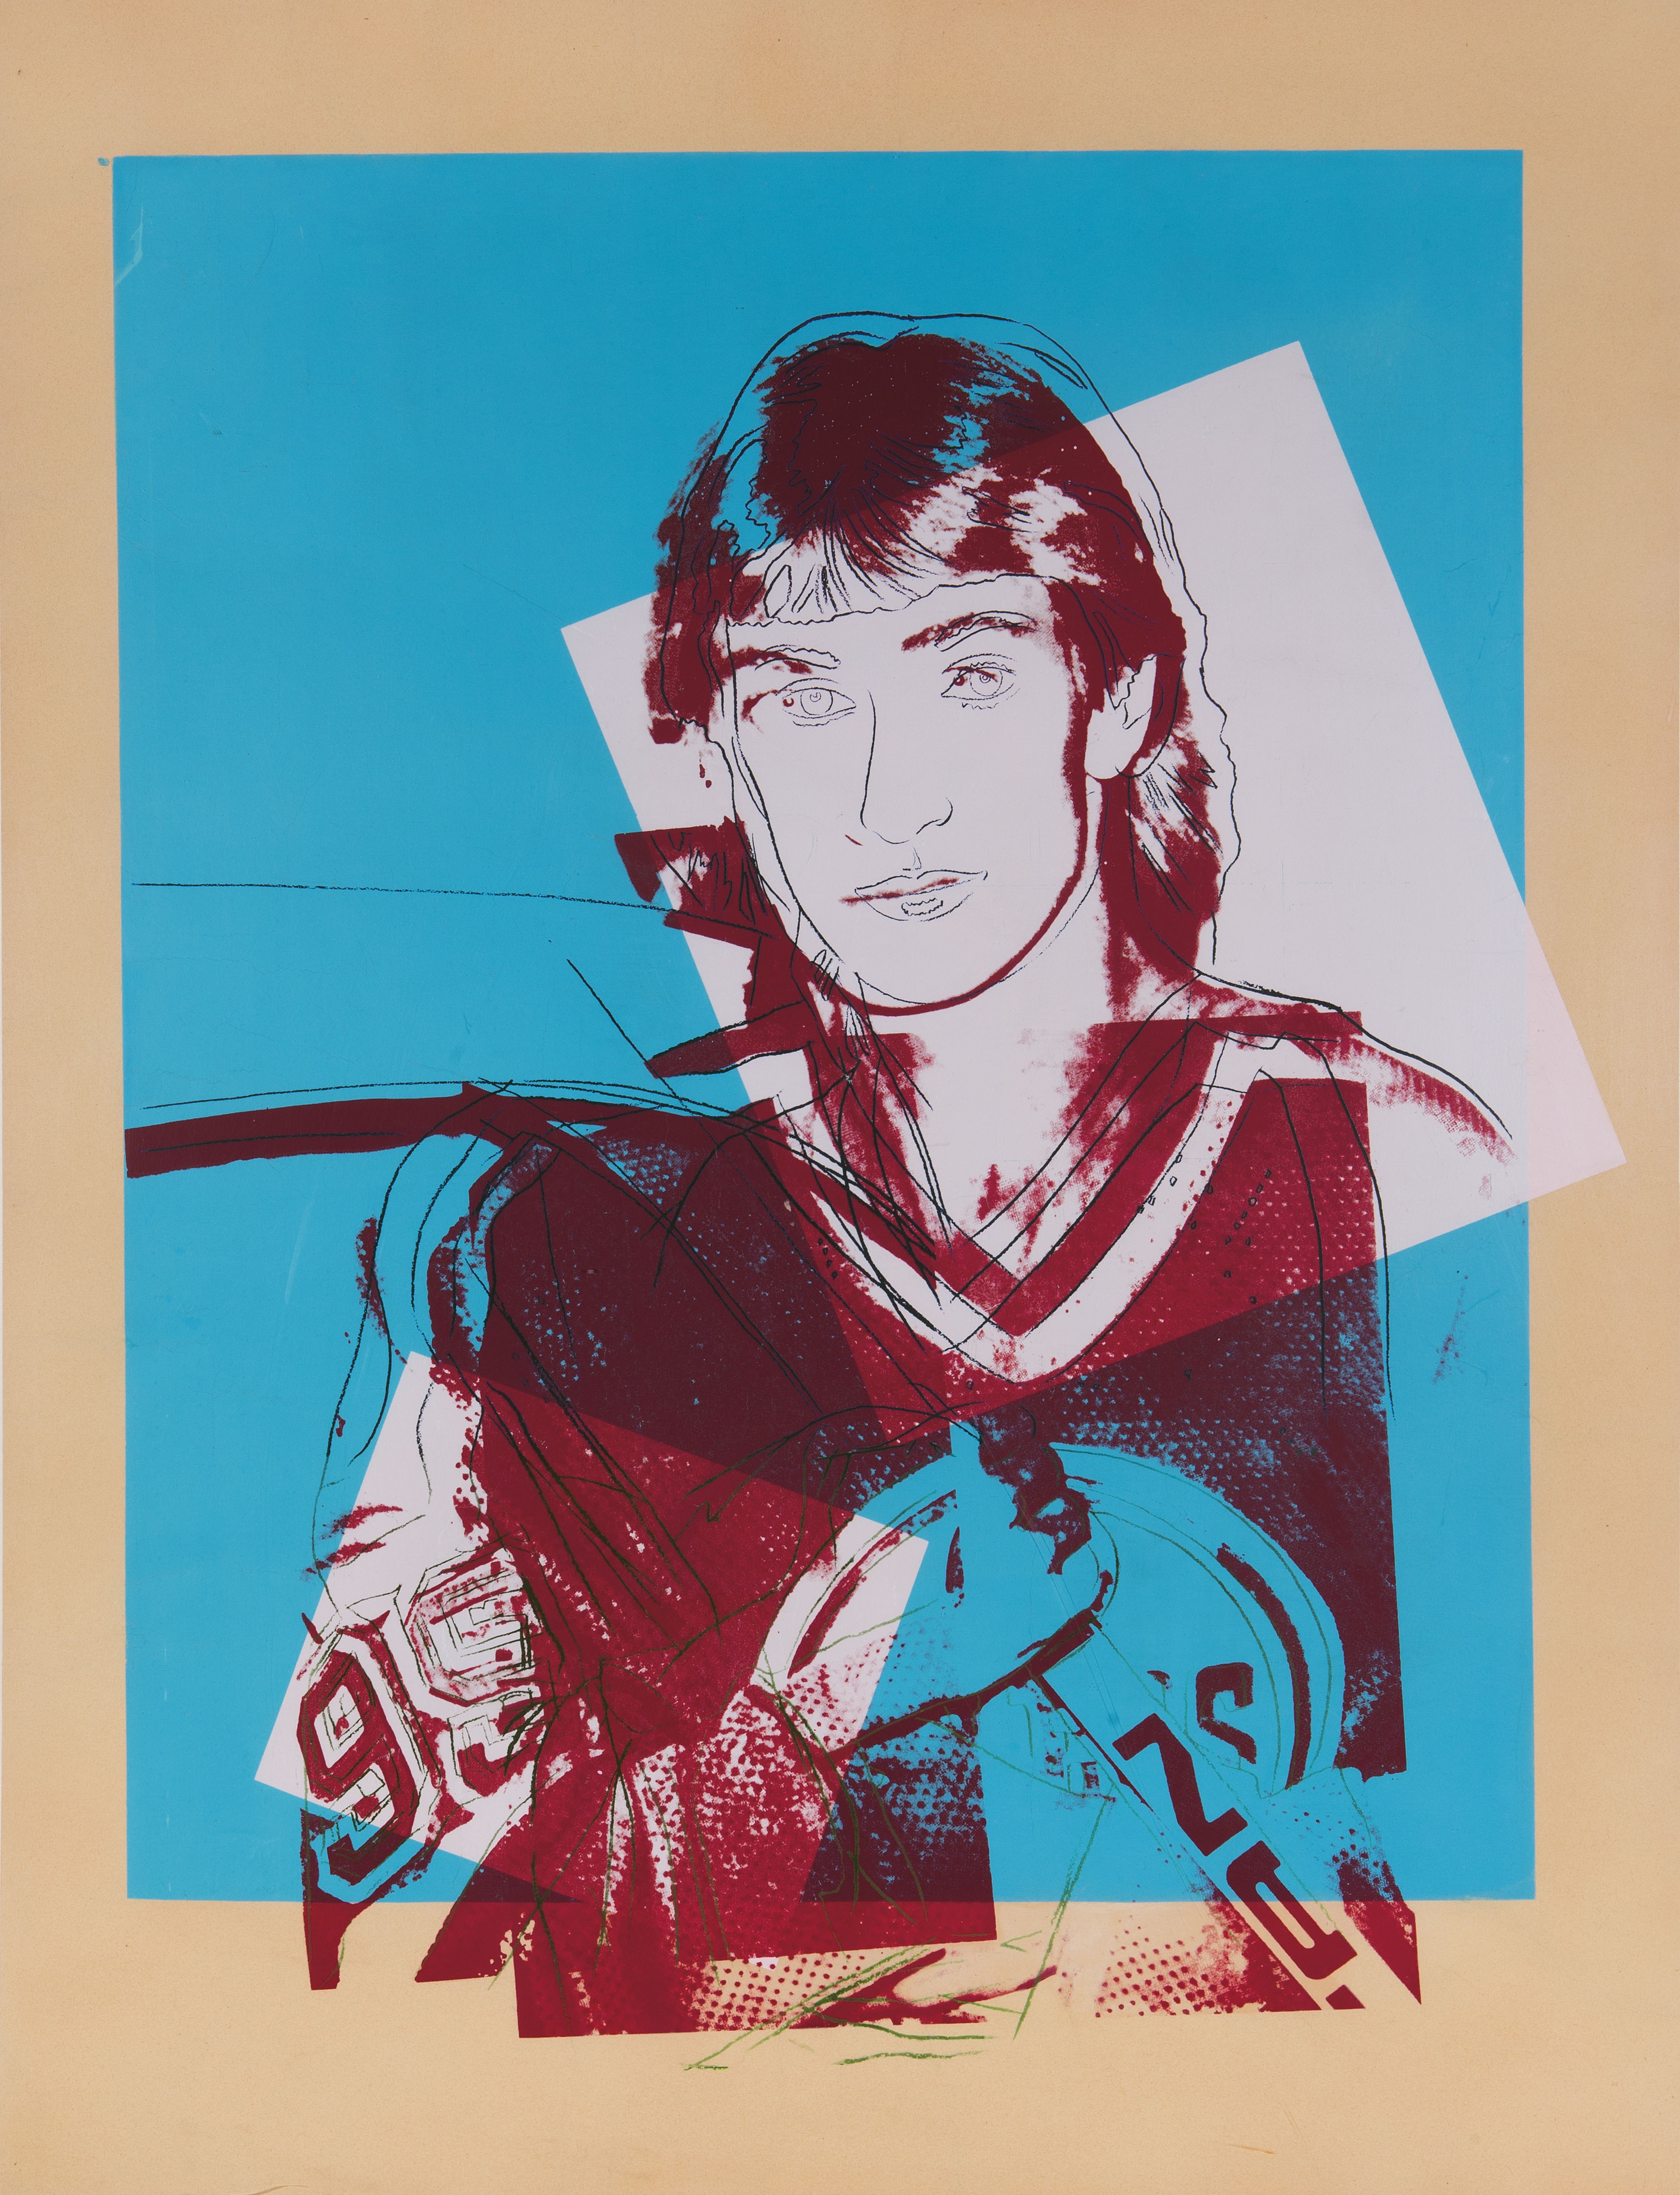 Wayne Gretzky by Andy Warhol, 1984